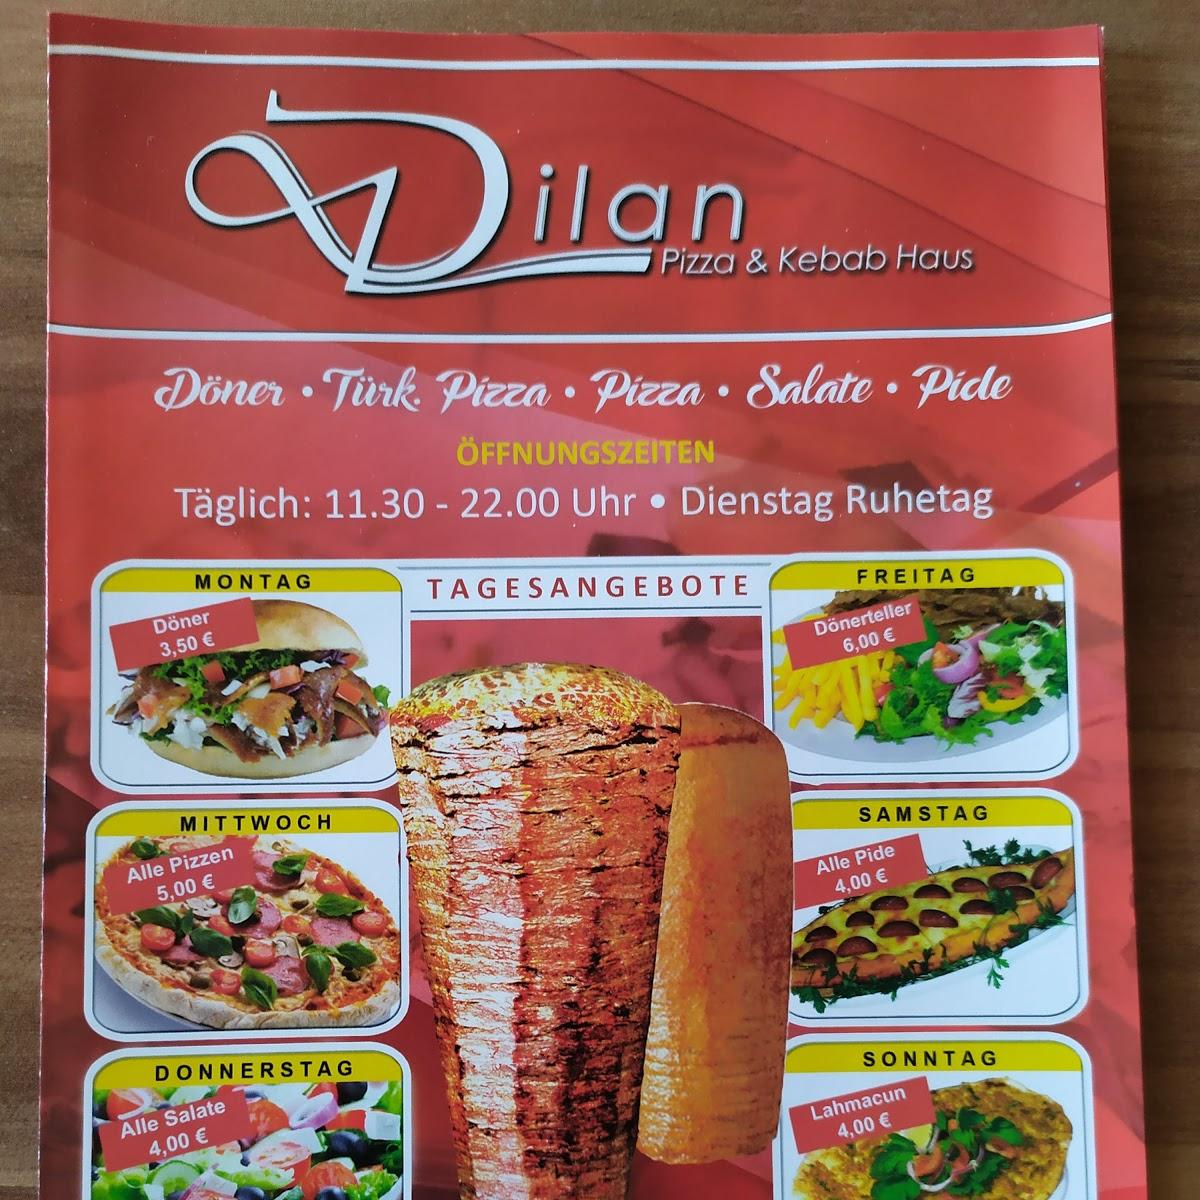 Restaurant "Dilan" in Elz